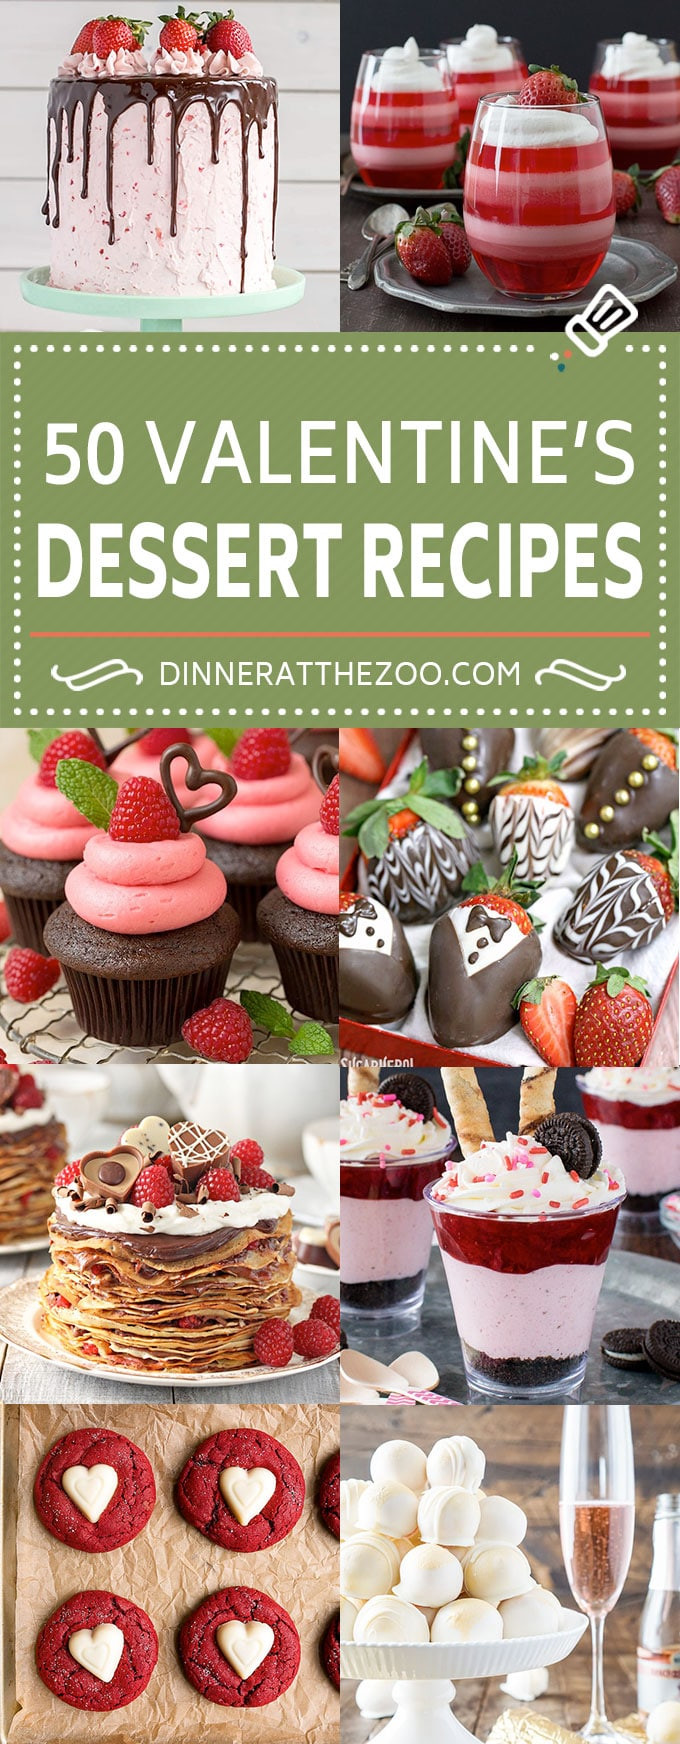 Valentine Day Desserts Pinterest
 50 Valentine’s Day Dessert Recipes Dinner at the Zoo